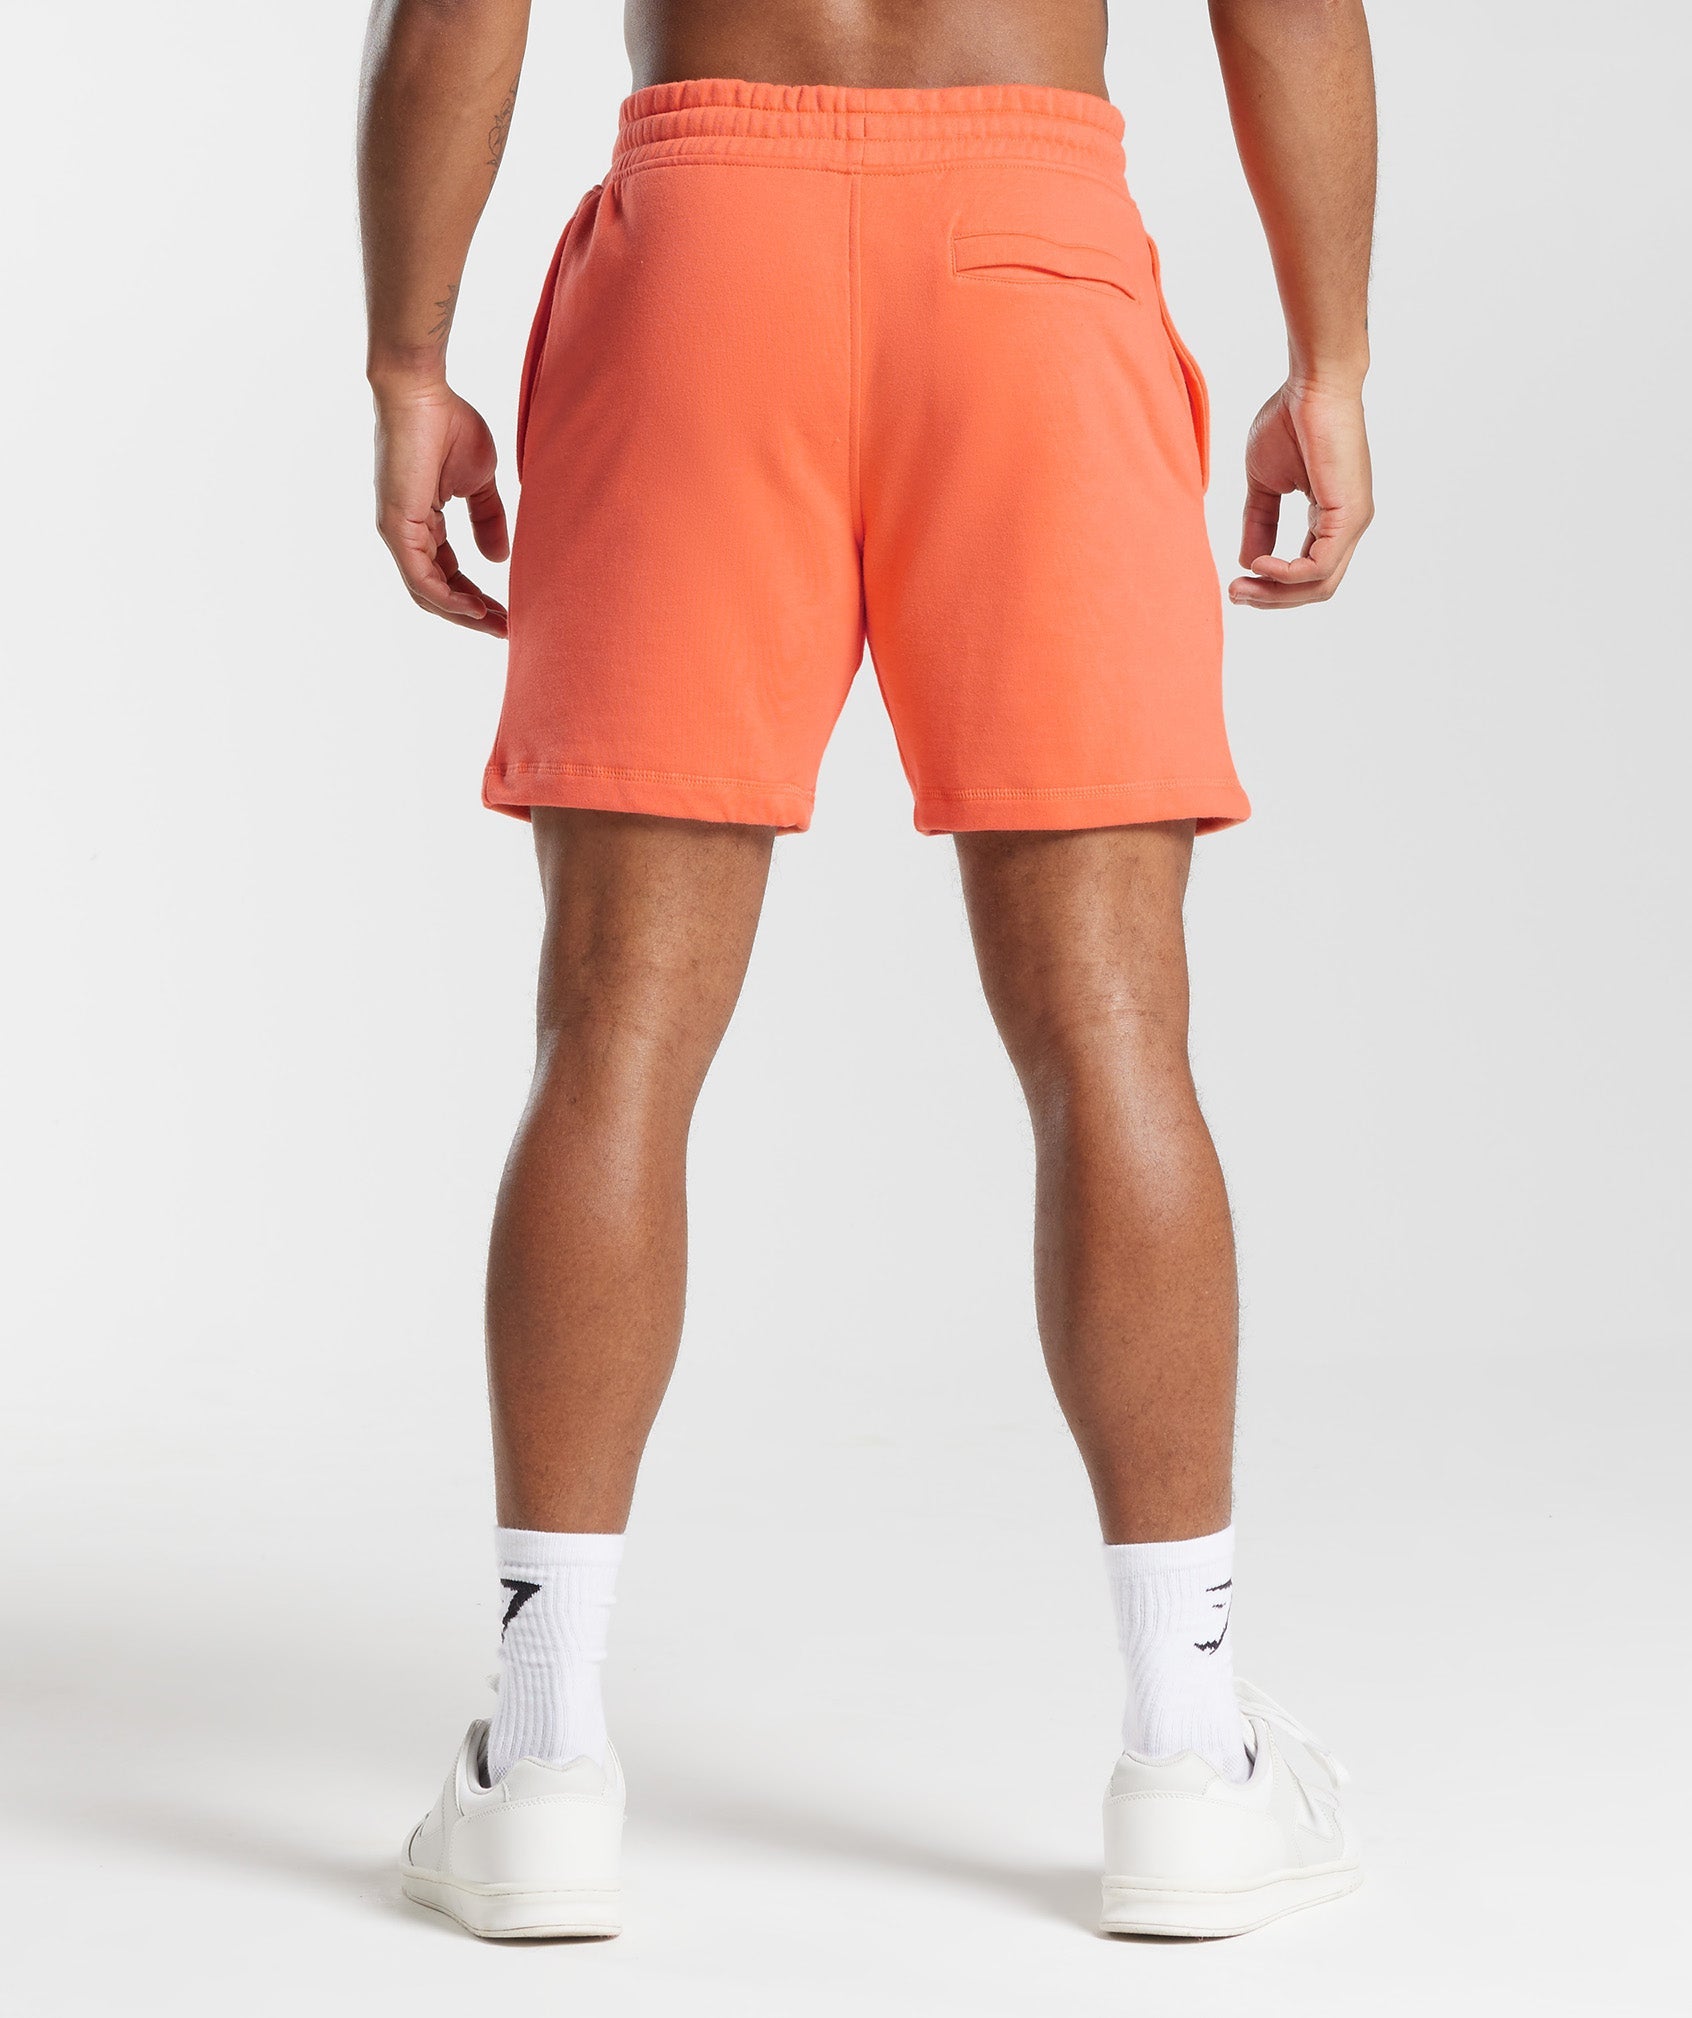 GMSHK Shorts in Solstice Orange - view 2